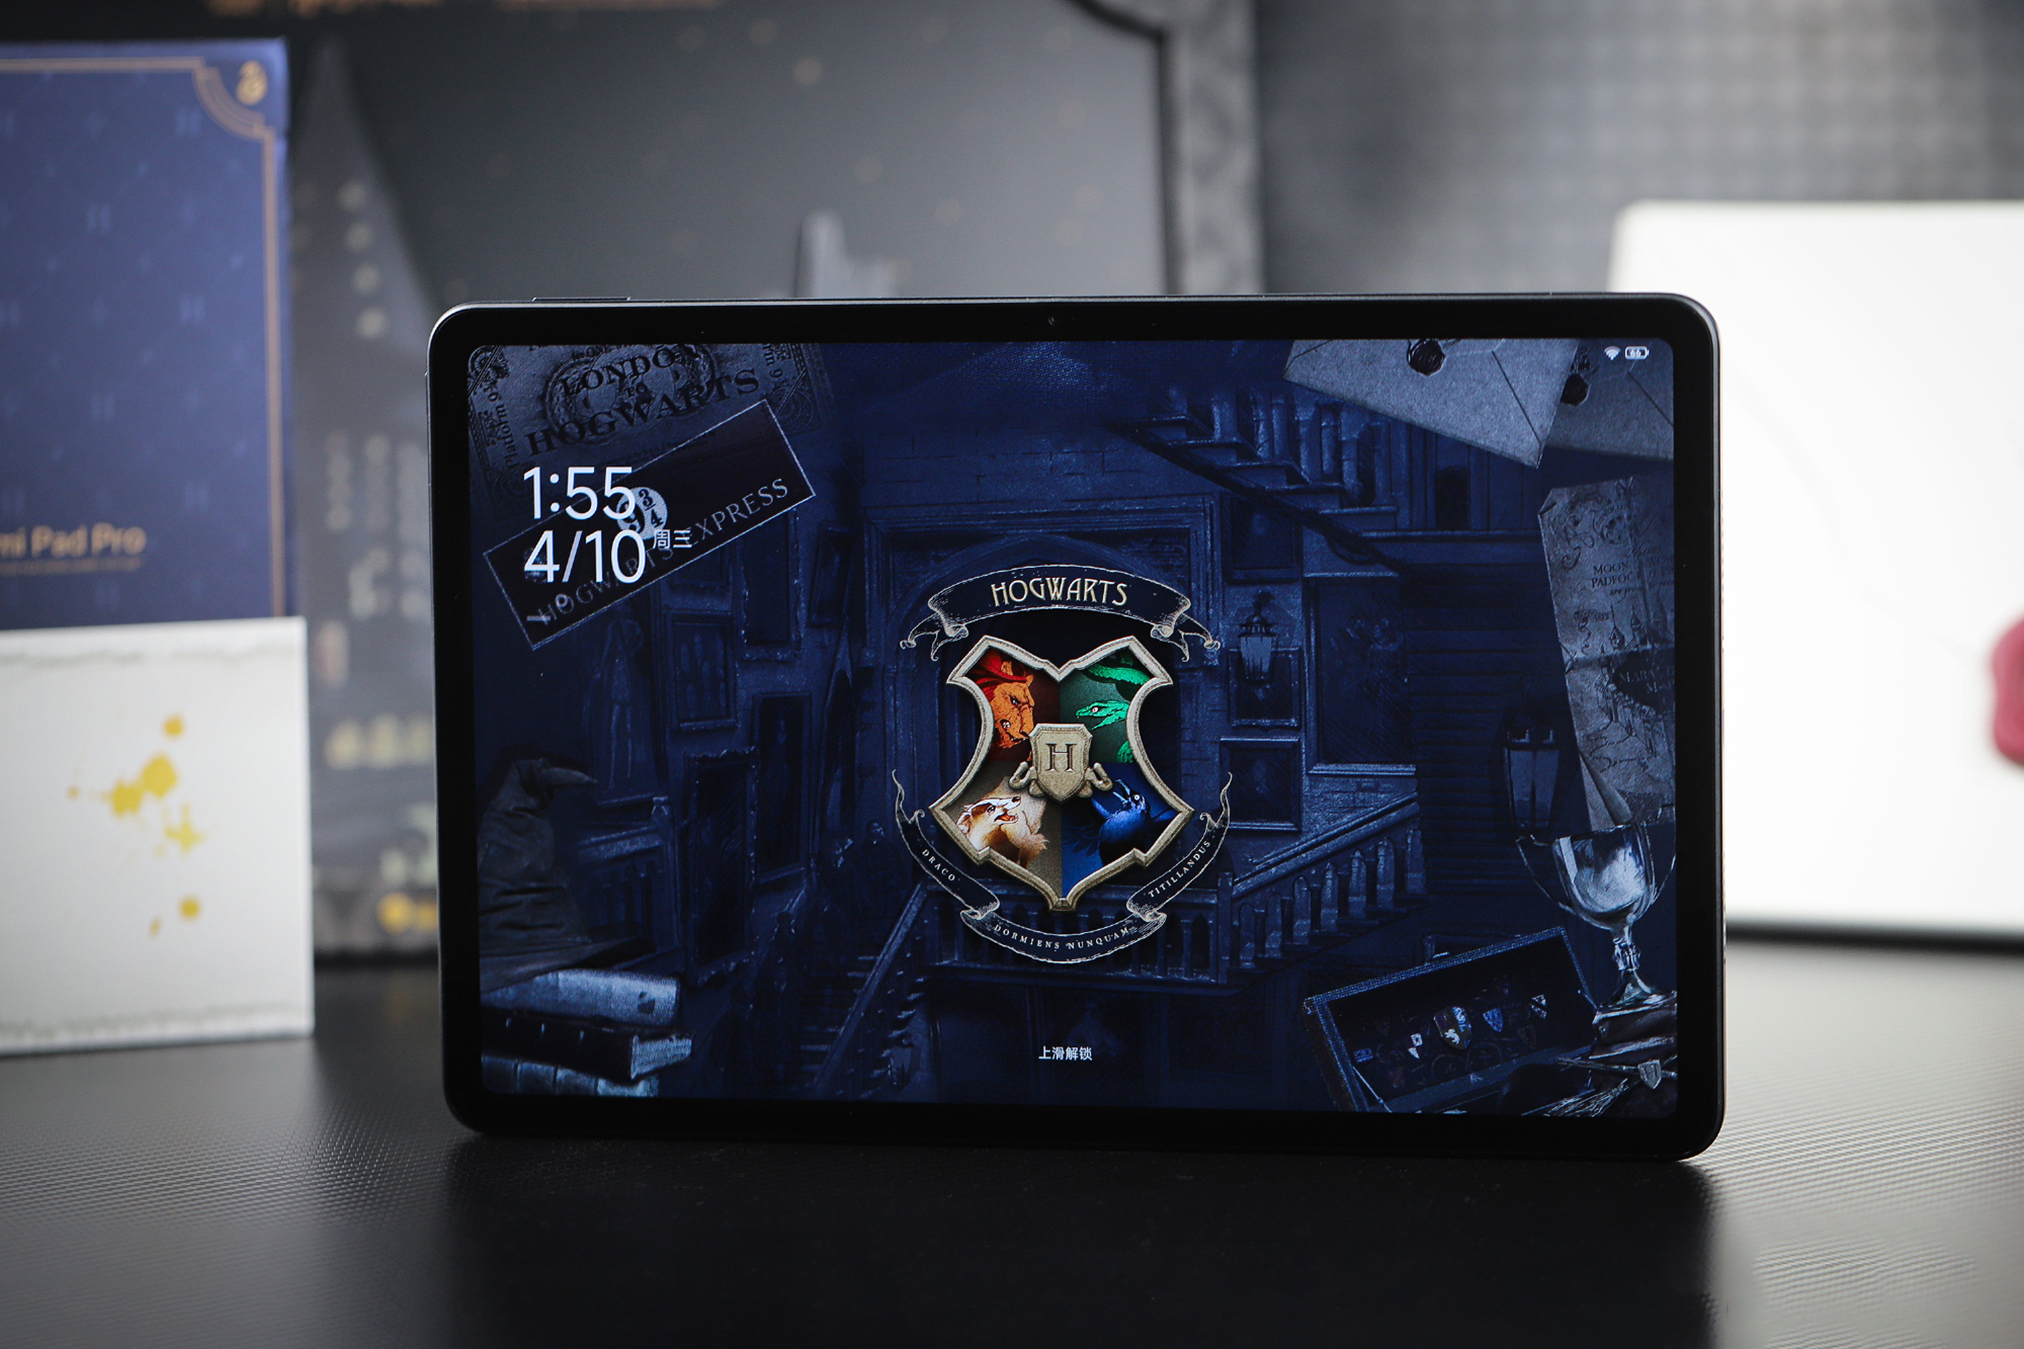 Cận cảnh máy tính bảng 12 inch giá rẻ của Xiaomi: Thiết kế đẹp như iPad, có cả bản Harry Potter đặc biệt cho các Potterheads mà giá chỉ hơn 5 triệu đồng- Ảnh 26.